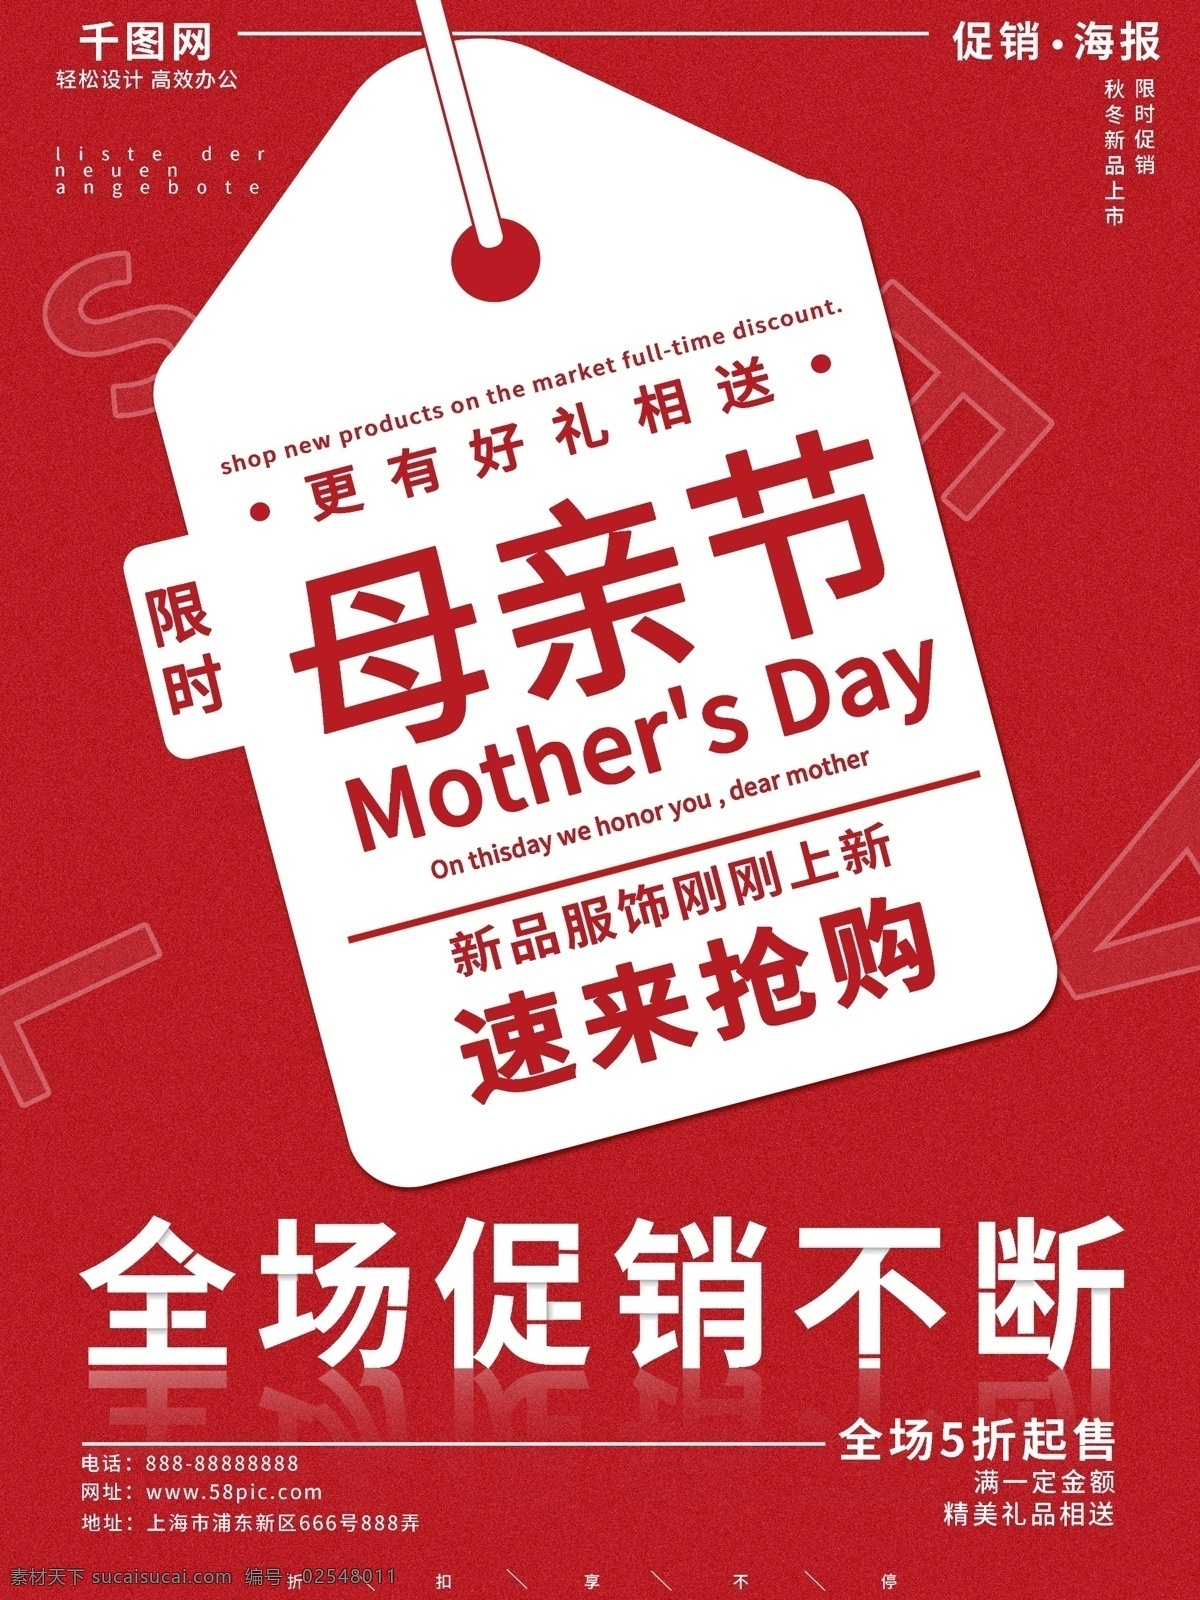 红色 简约 母亲节 新品 商场促销 海报 书签 节日 促销 折扣